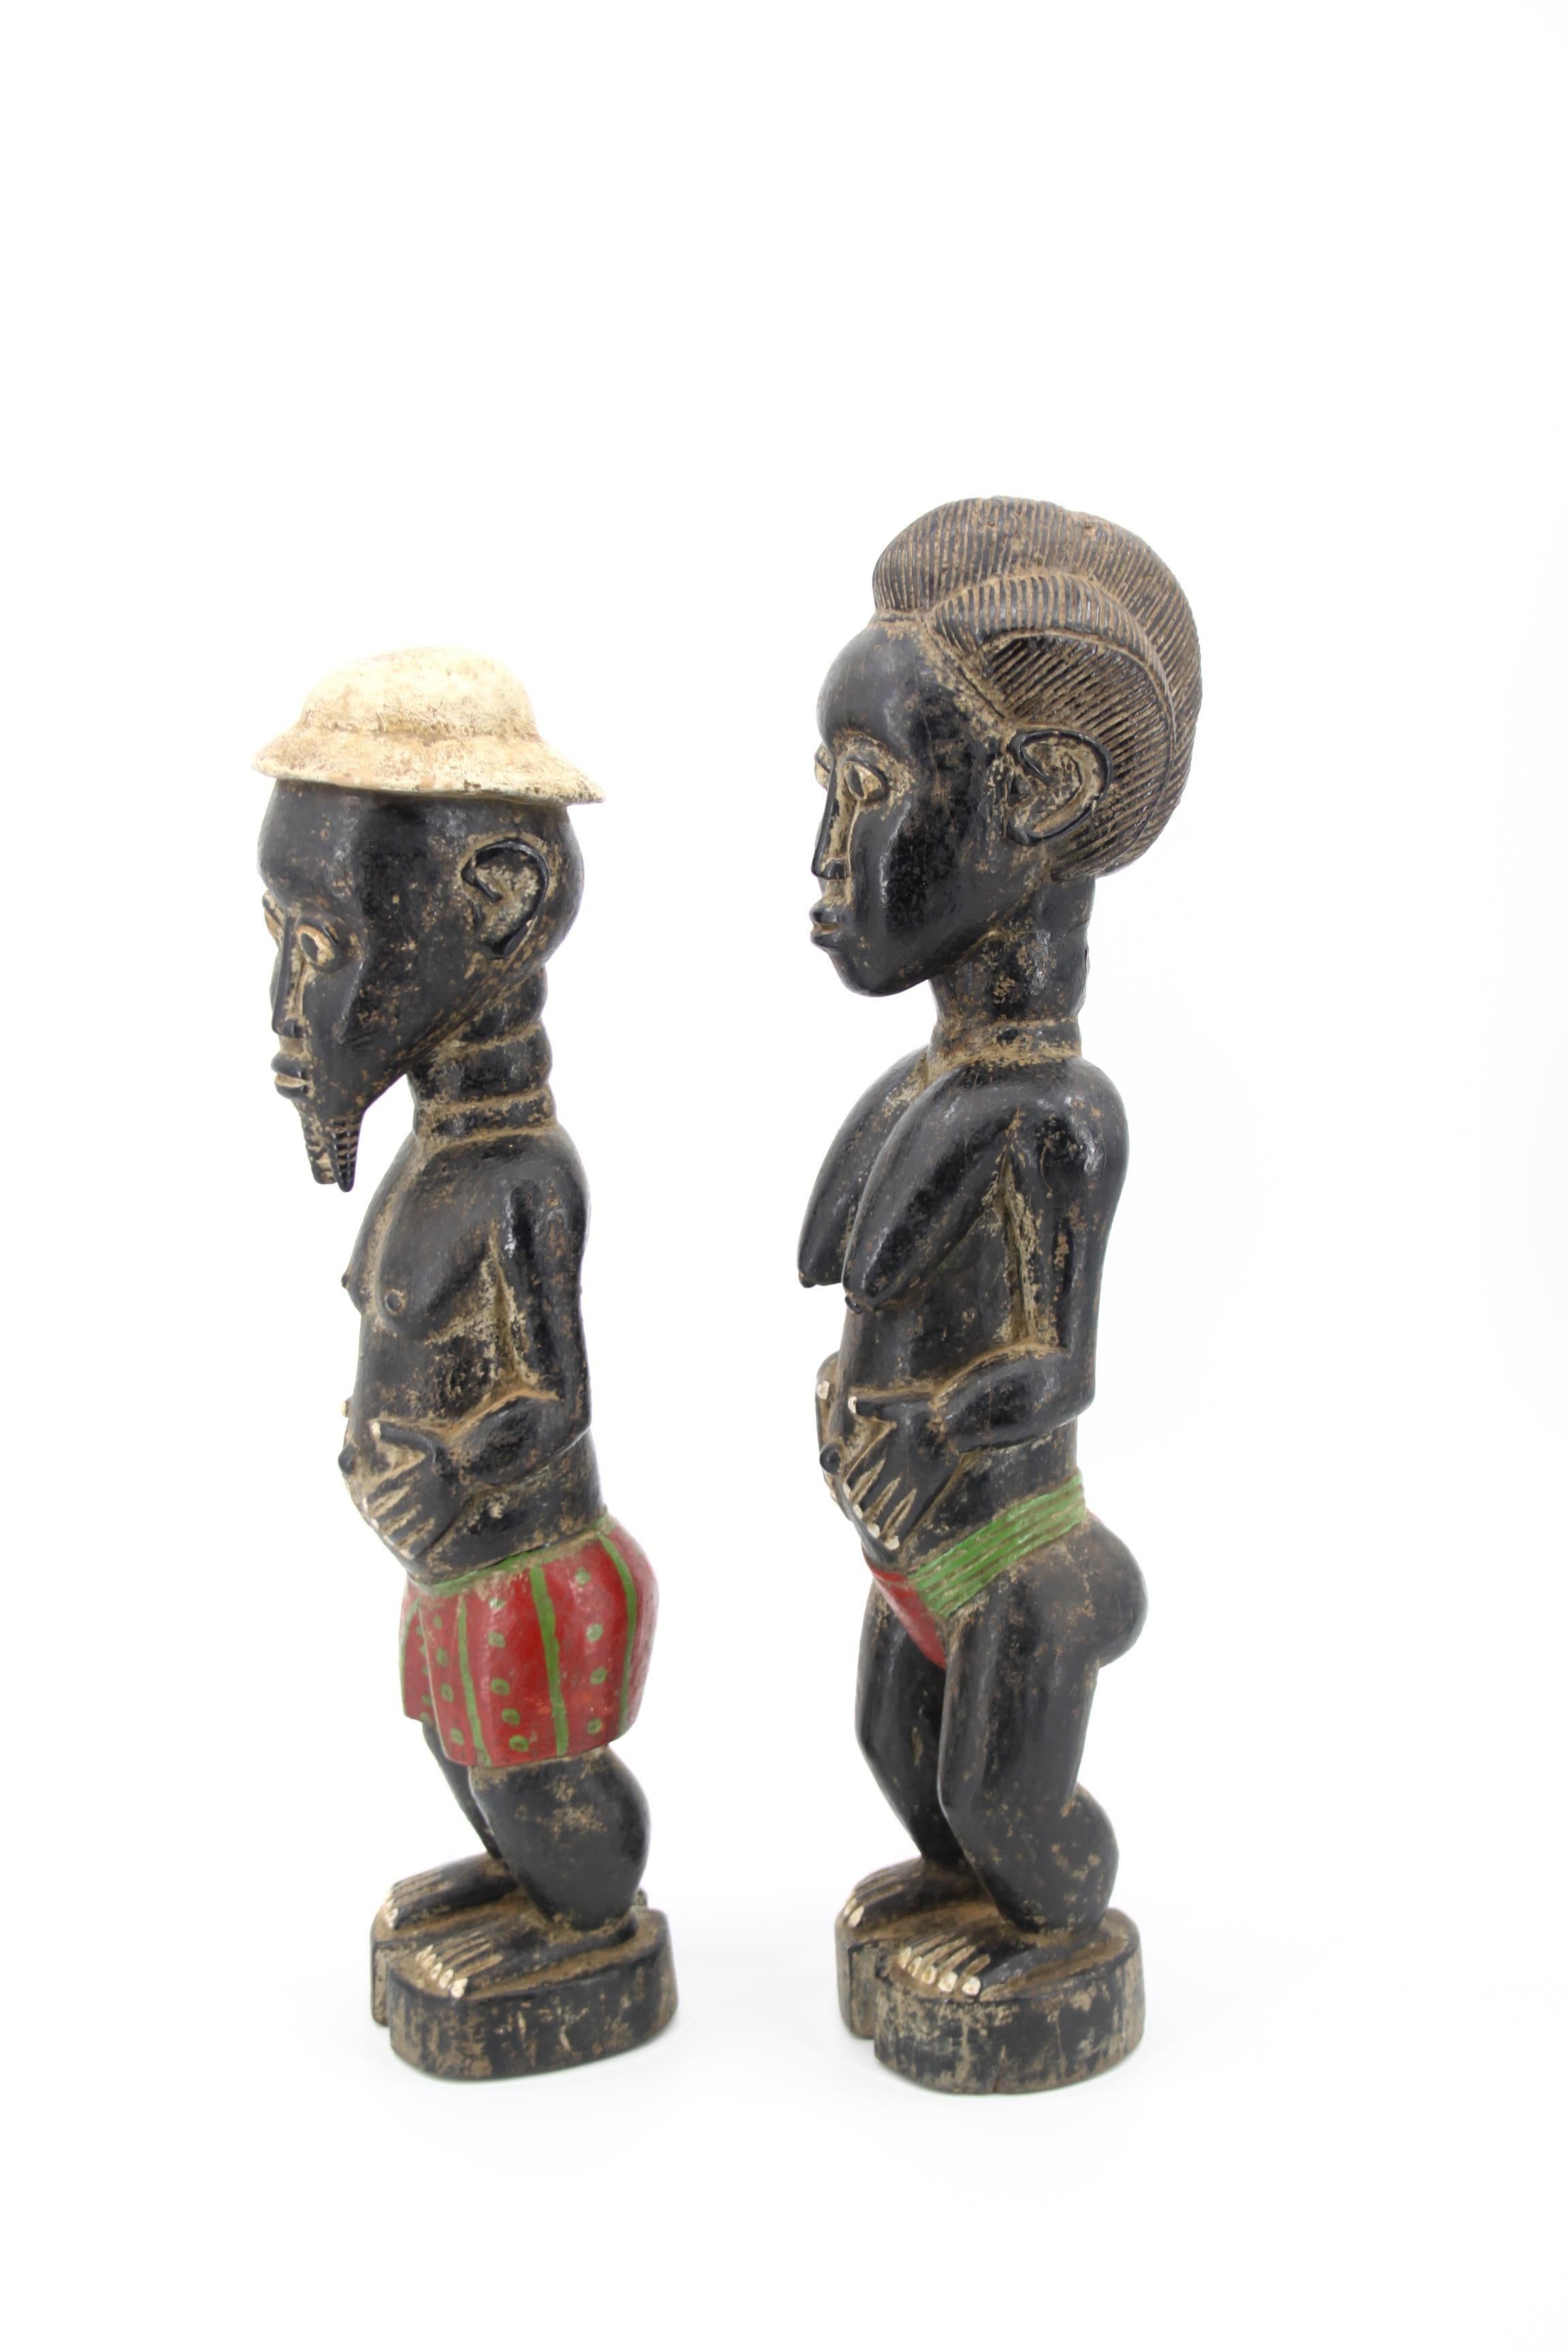 Baoulé, statue en bois Afrique Côte d'Ivoire
Les Baoulé (ou Baoulé) sont un peuple Akan et l'un des groupes les plus importants de la côte d'ivoire.

Les Baoulé sont des agriculteurs qui vivent dans l'est de la Côte d'Ivoire. Le peuple baoulé est